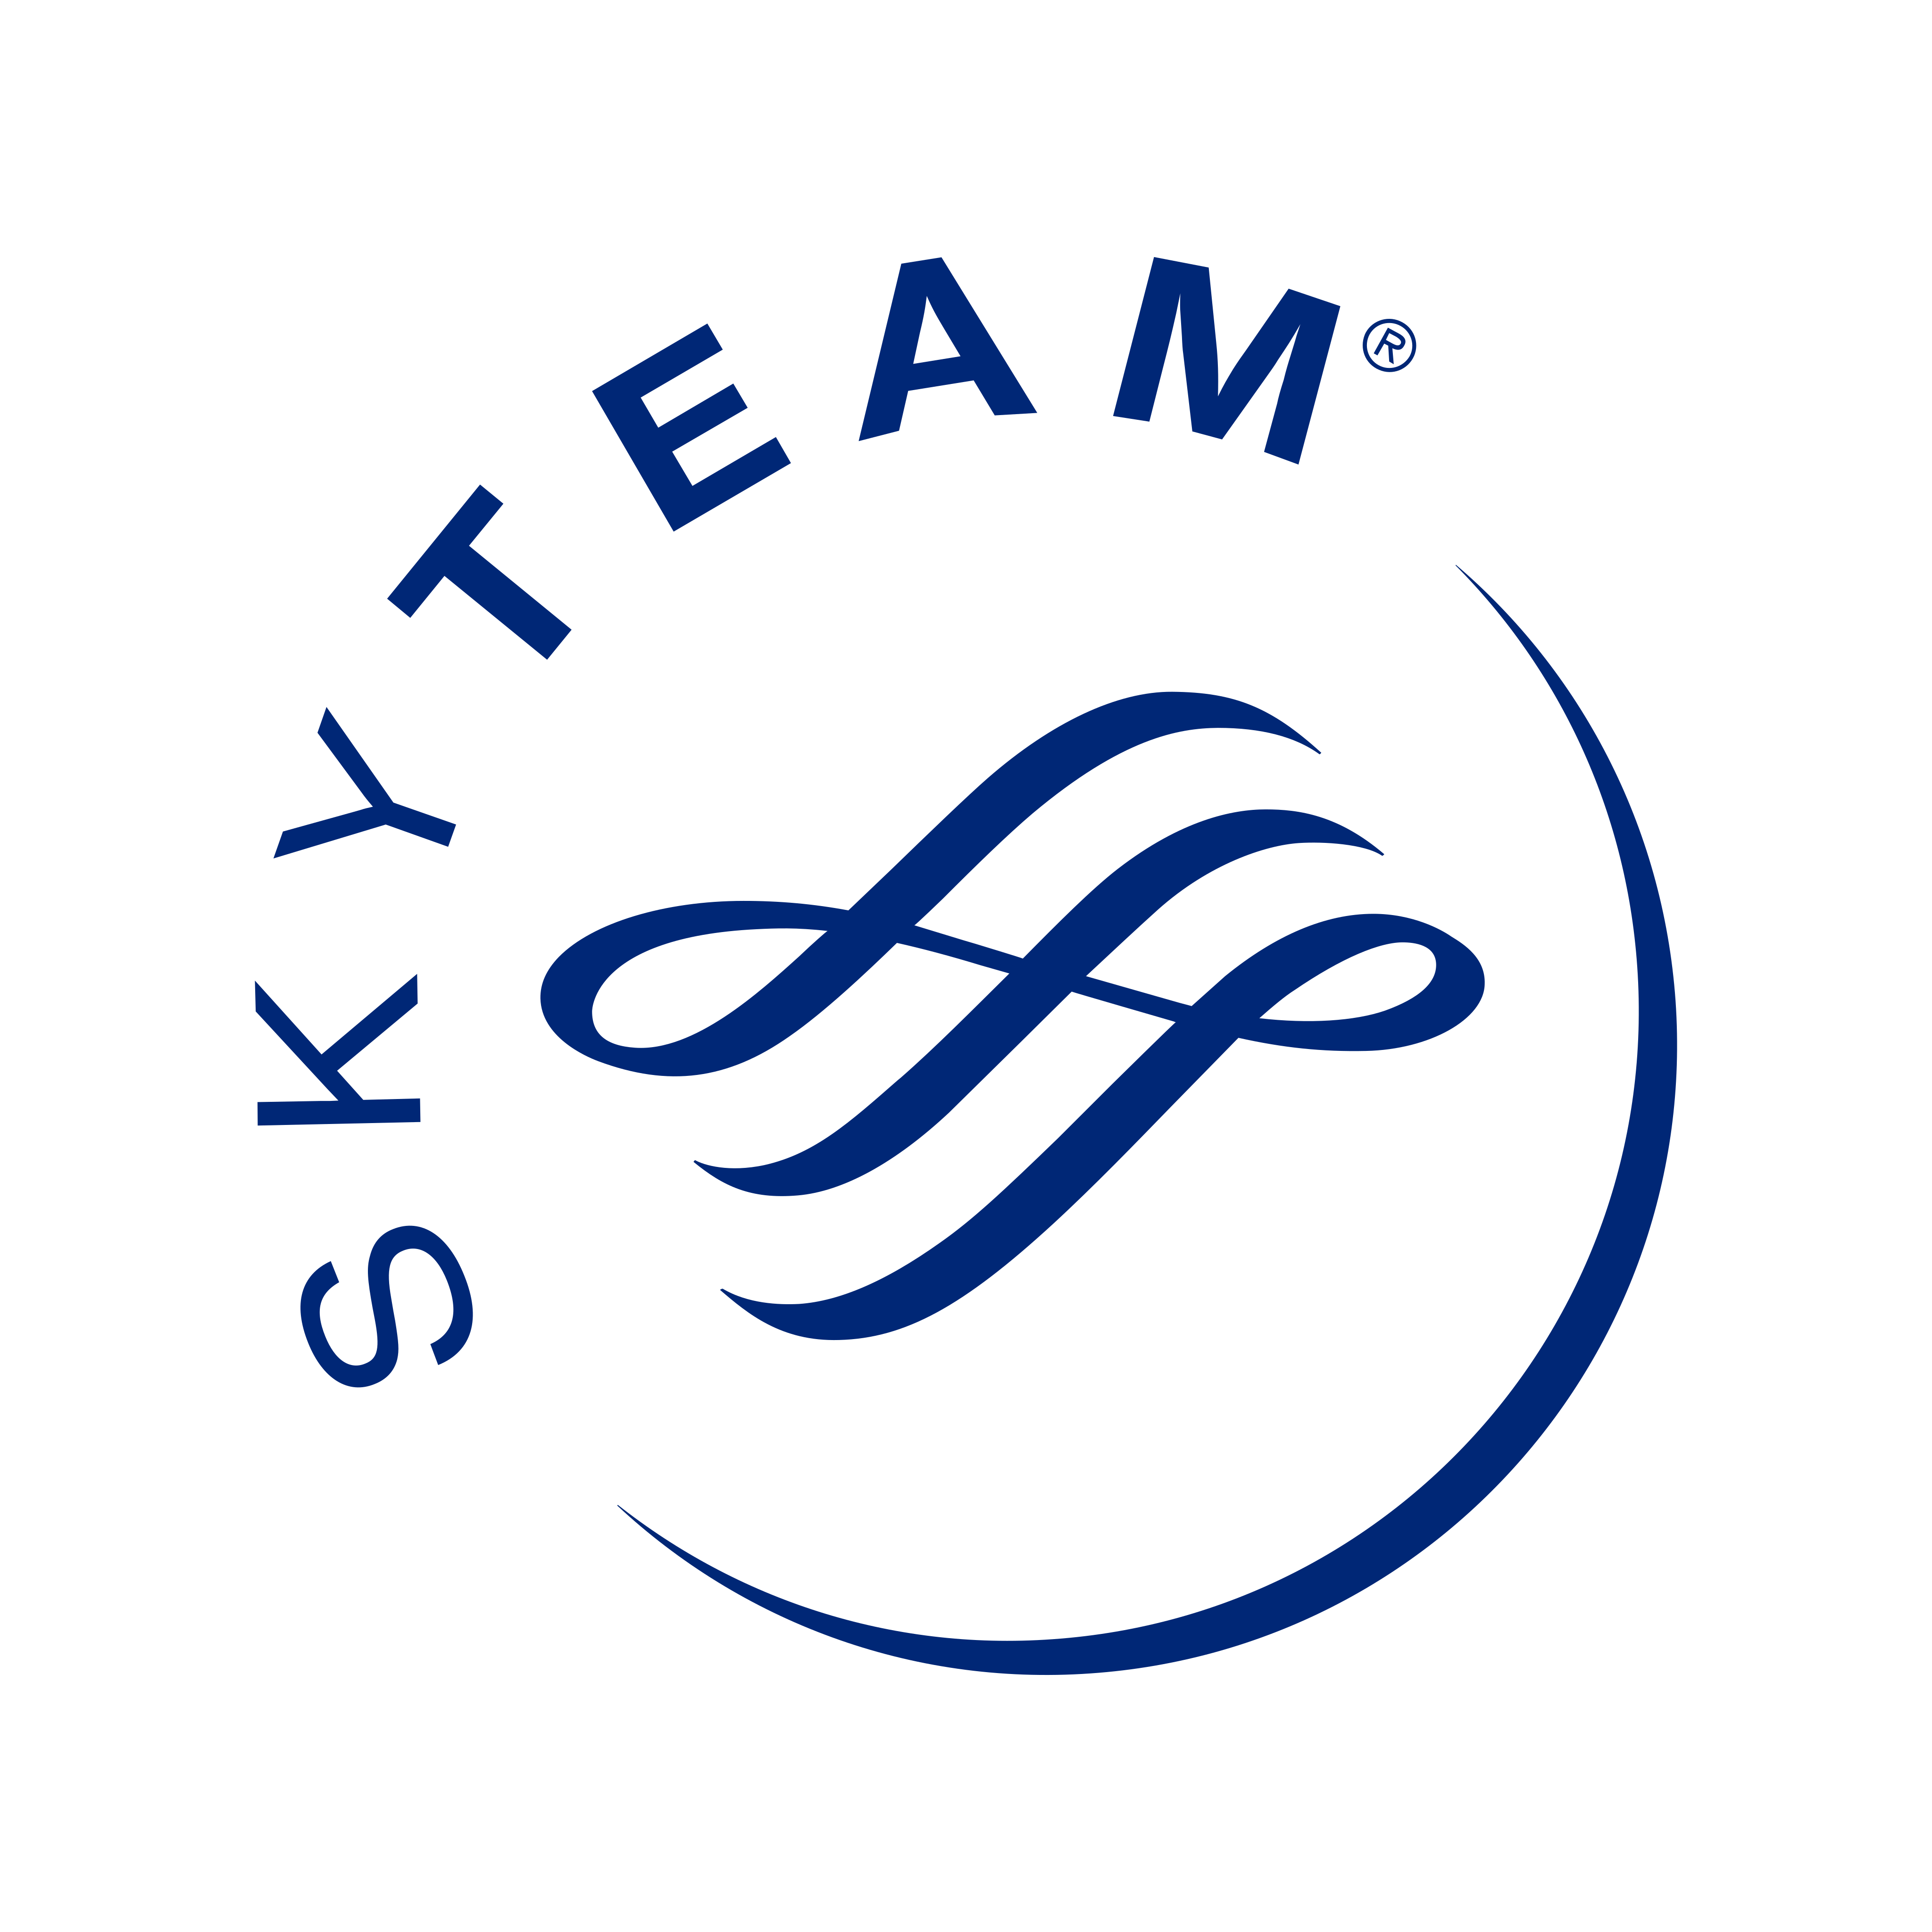 skyteam logo 0 - Skyteam Logo